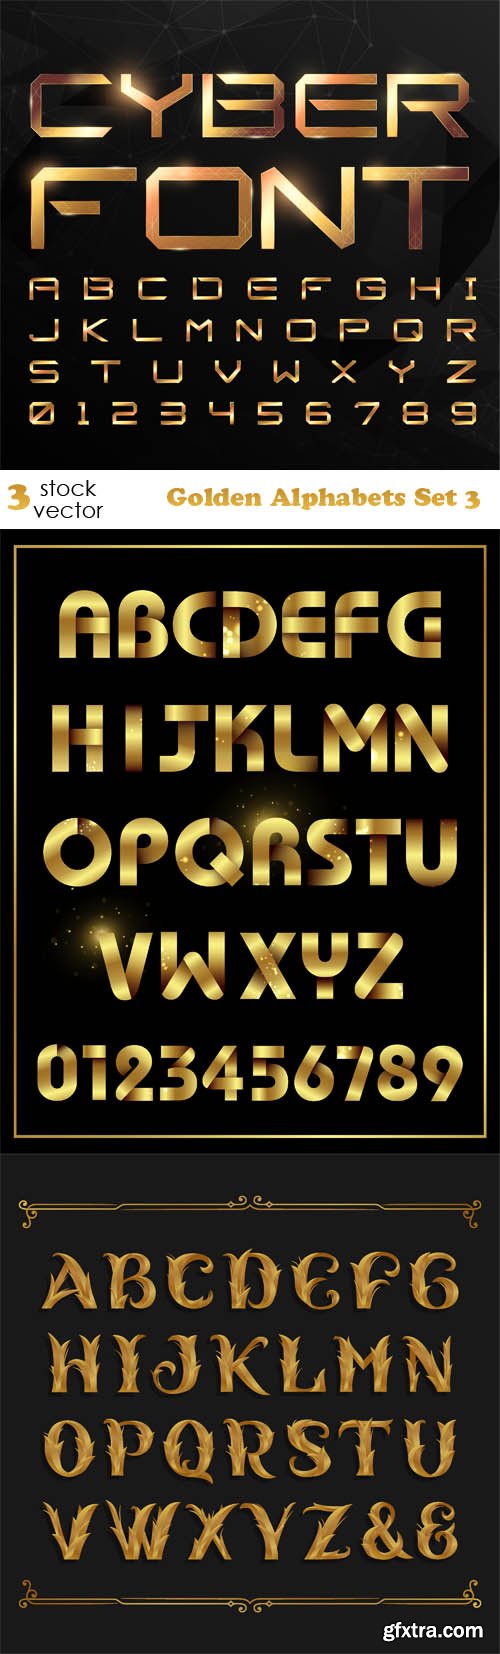 Vectors - Golden Alphabets Set 3